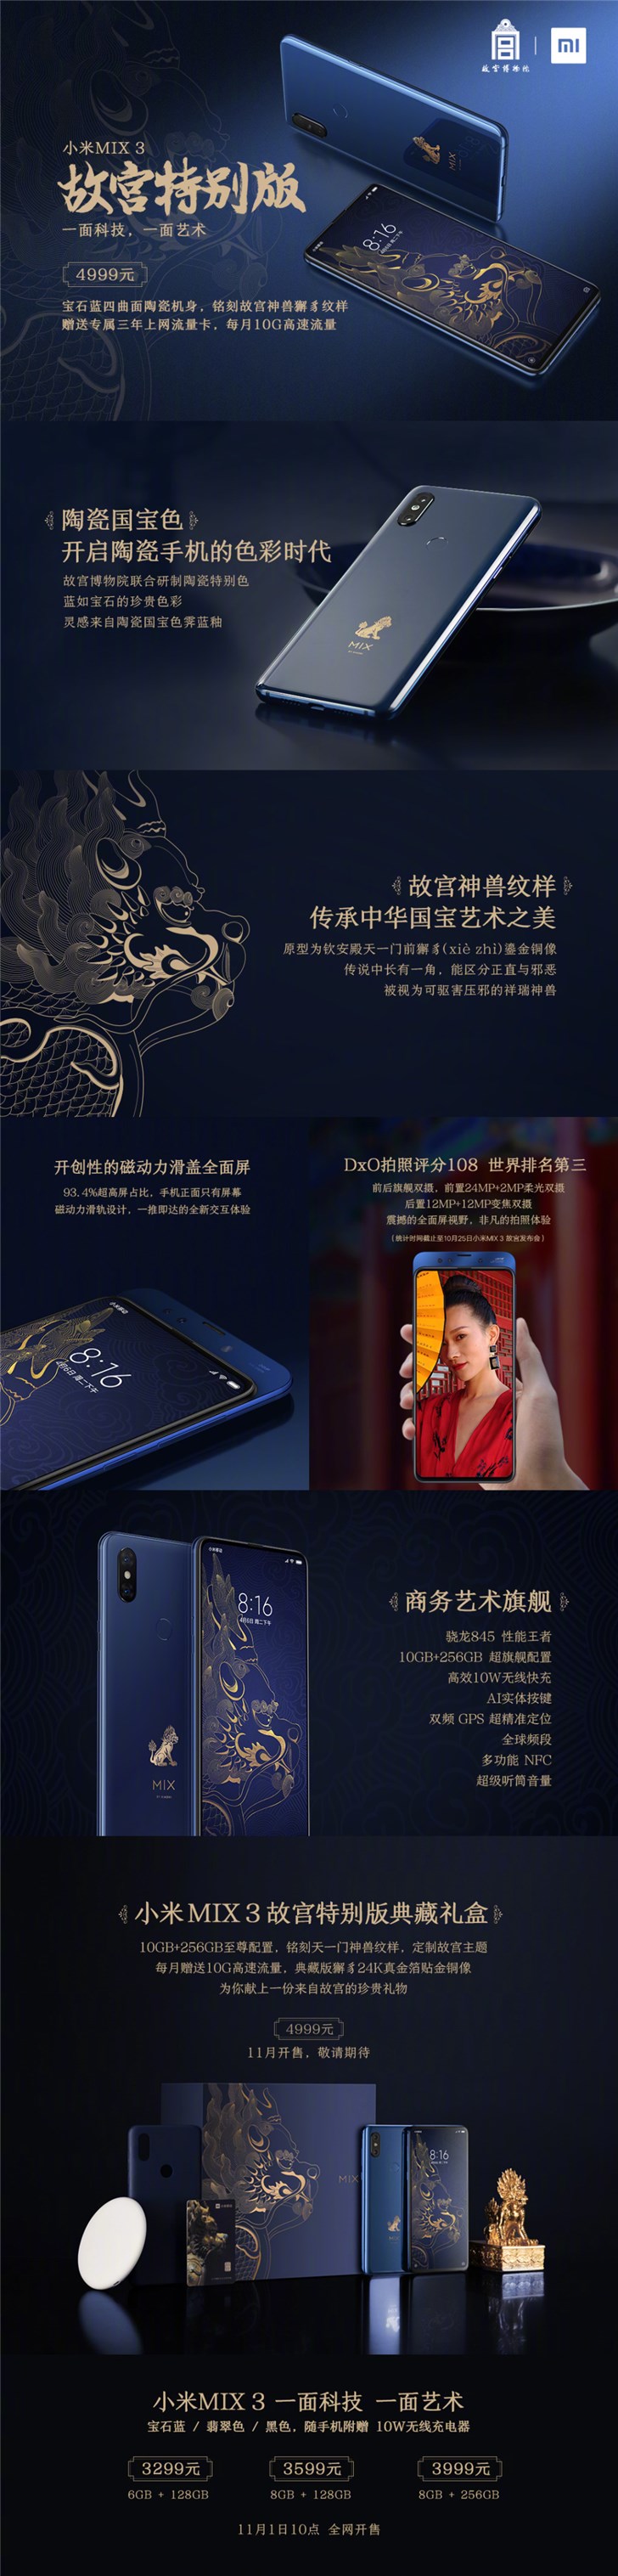 广州移动预存话费送手机，一图看懂小米 MIX 3 故宫特别版典藏礼盒：最高旗舰设置